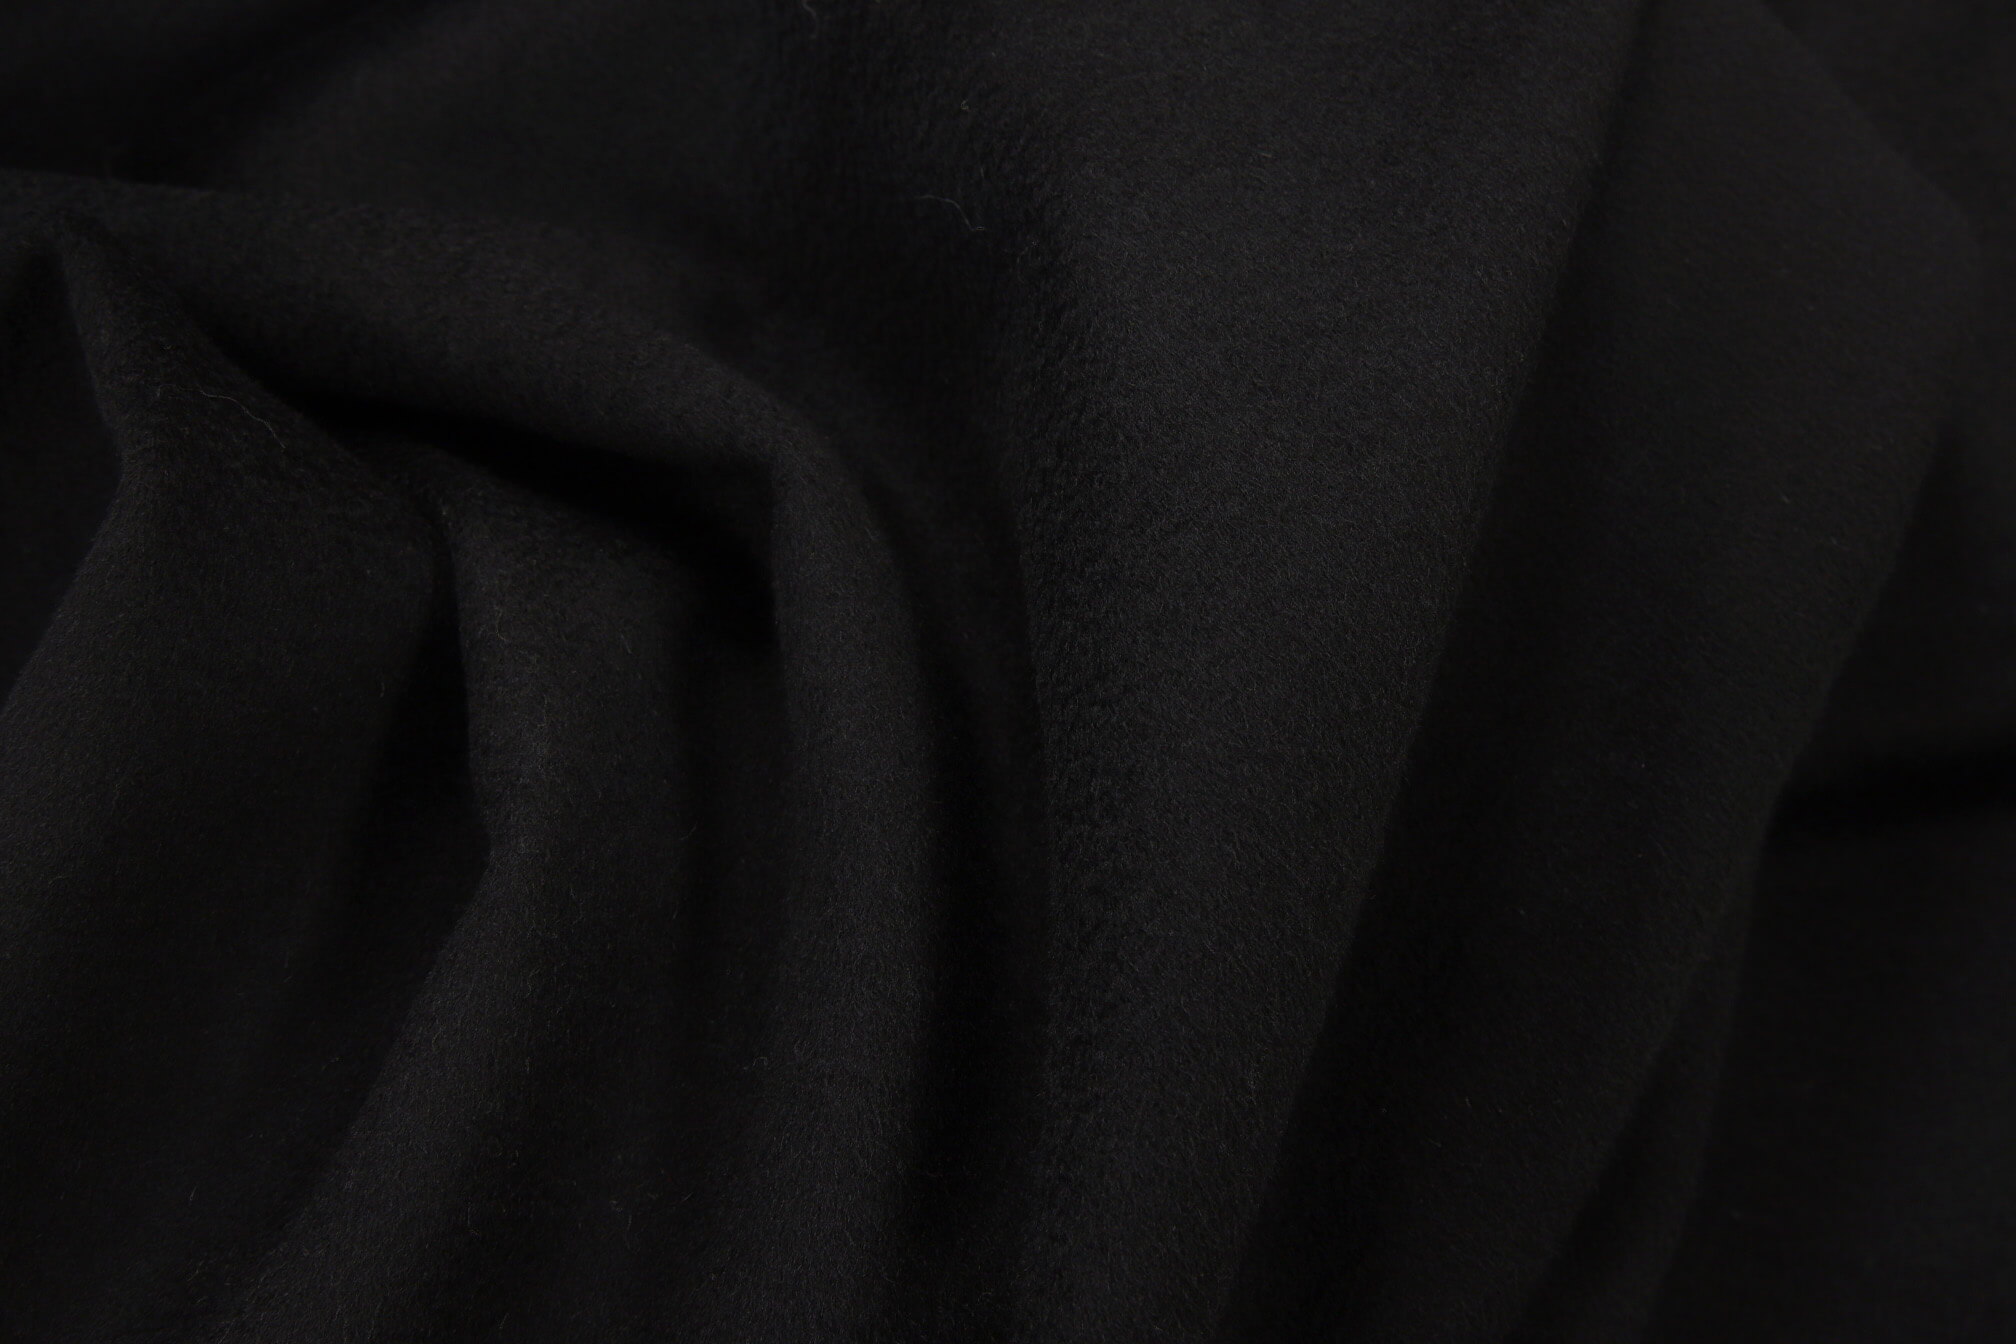 Пальтовая ткань с волной Max Mara ОТРЕЗЫ СПЕЦЦЕНА, цвет Черный, фото 1